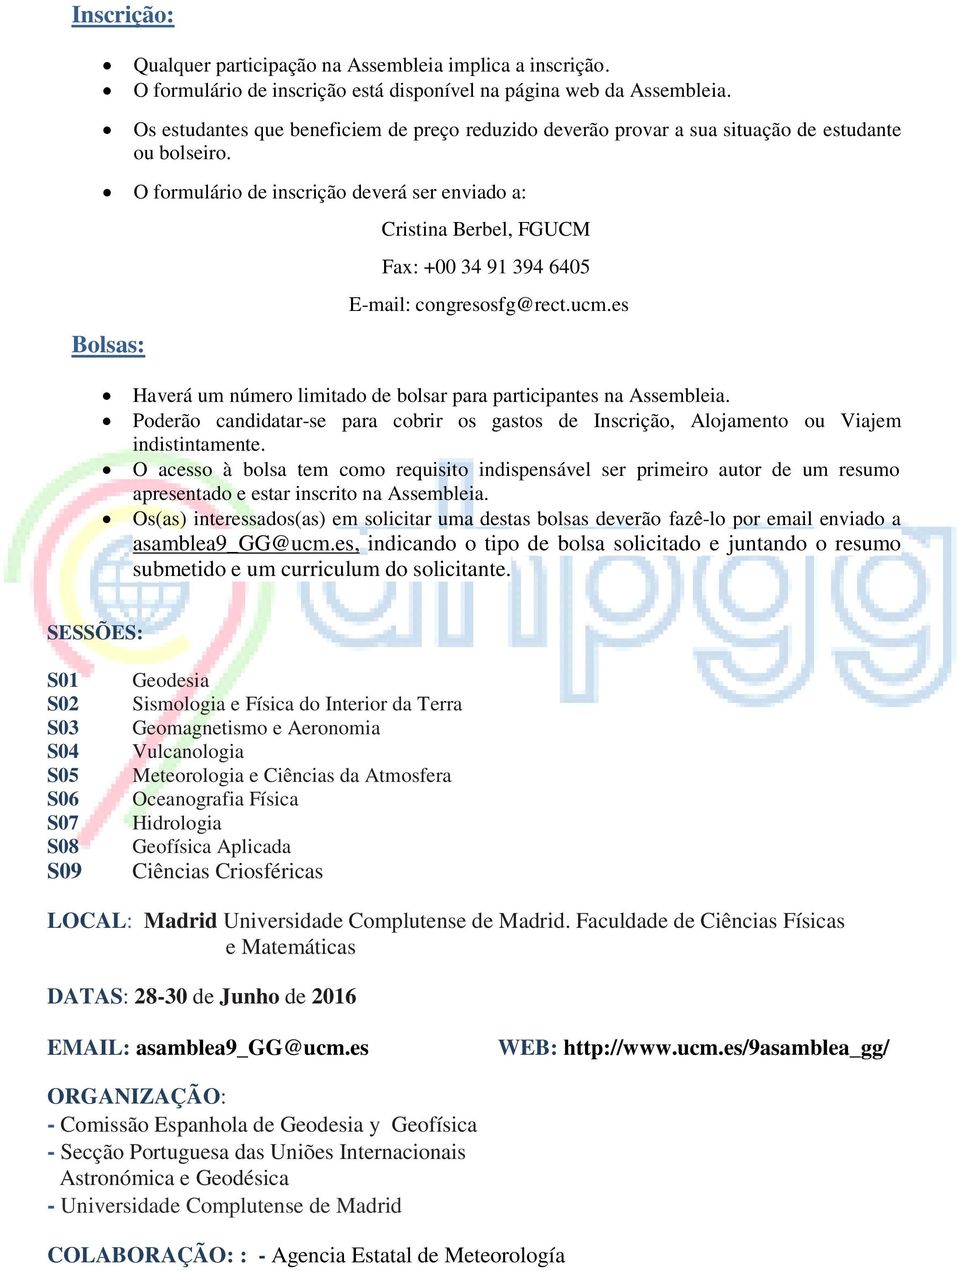 O formulário de inscrição deverá ser enviado a: Bolsas: Cristina Berbel, FGUCM Fax: +00 34 91 394 6405 E-mail: congresosfg@rect.ucm.